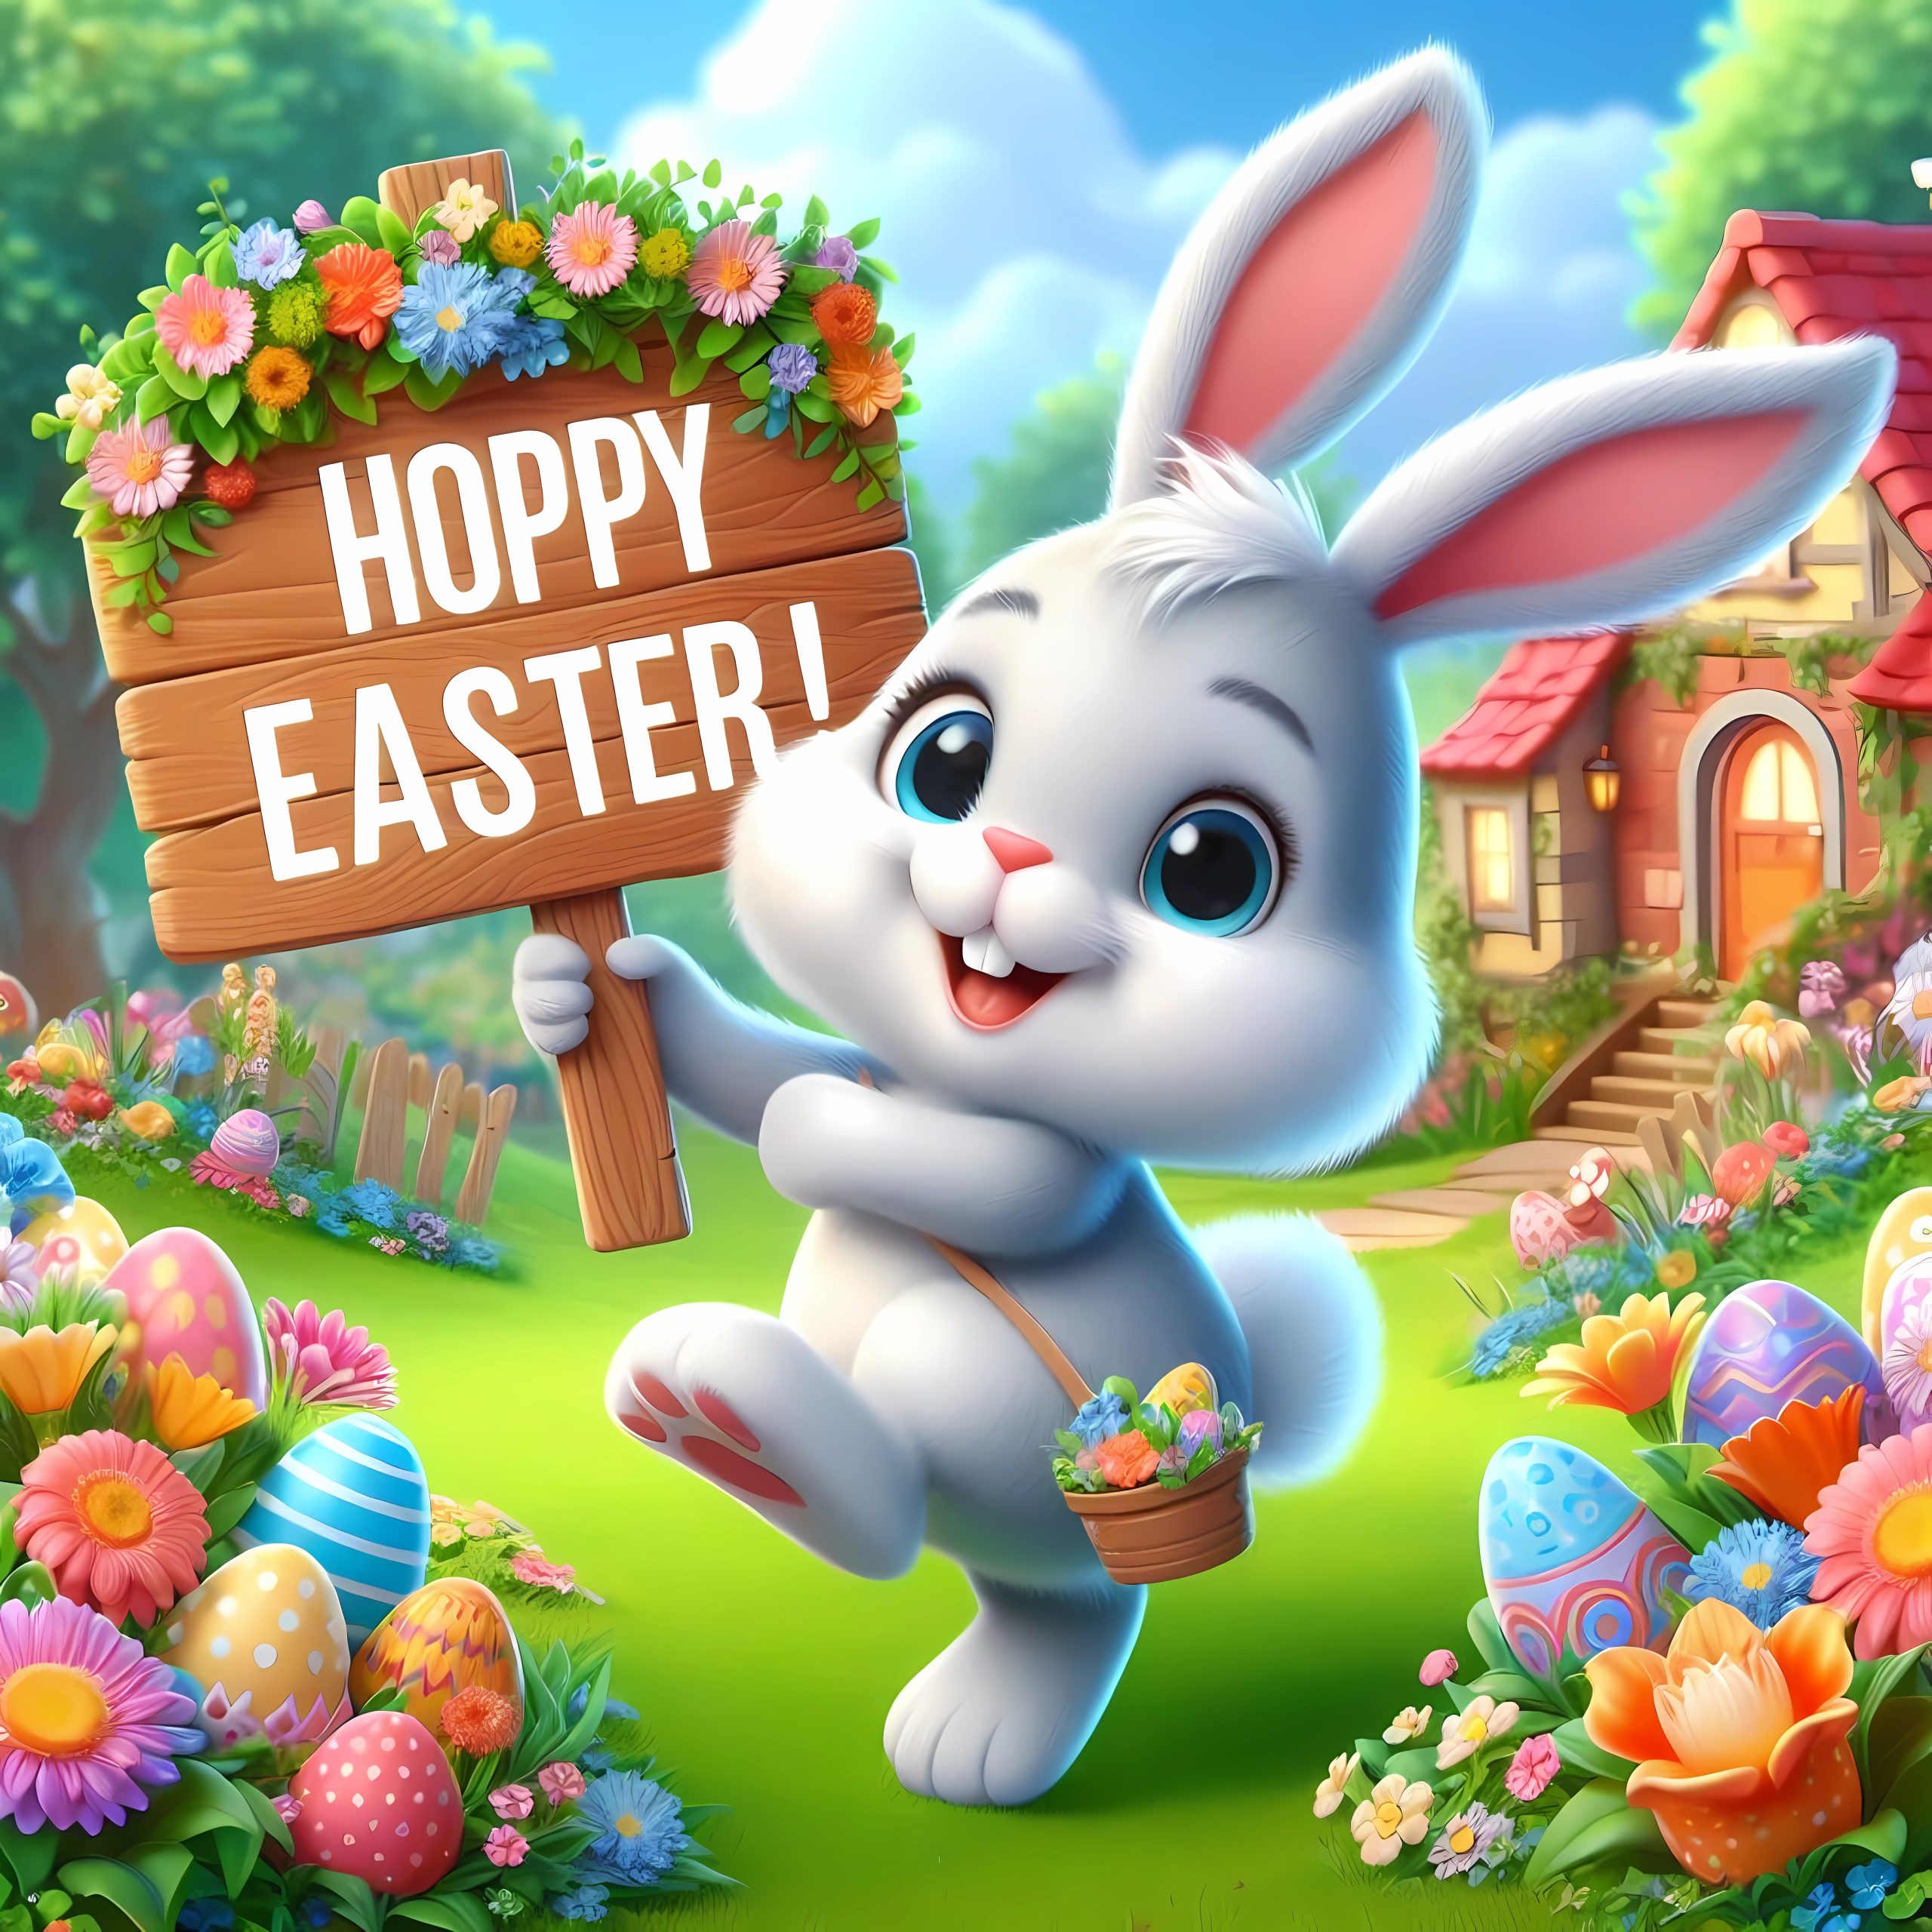 Funny Hoppy Easter